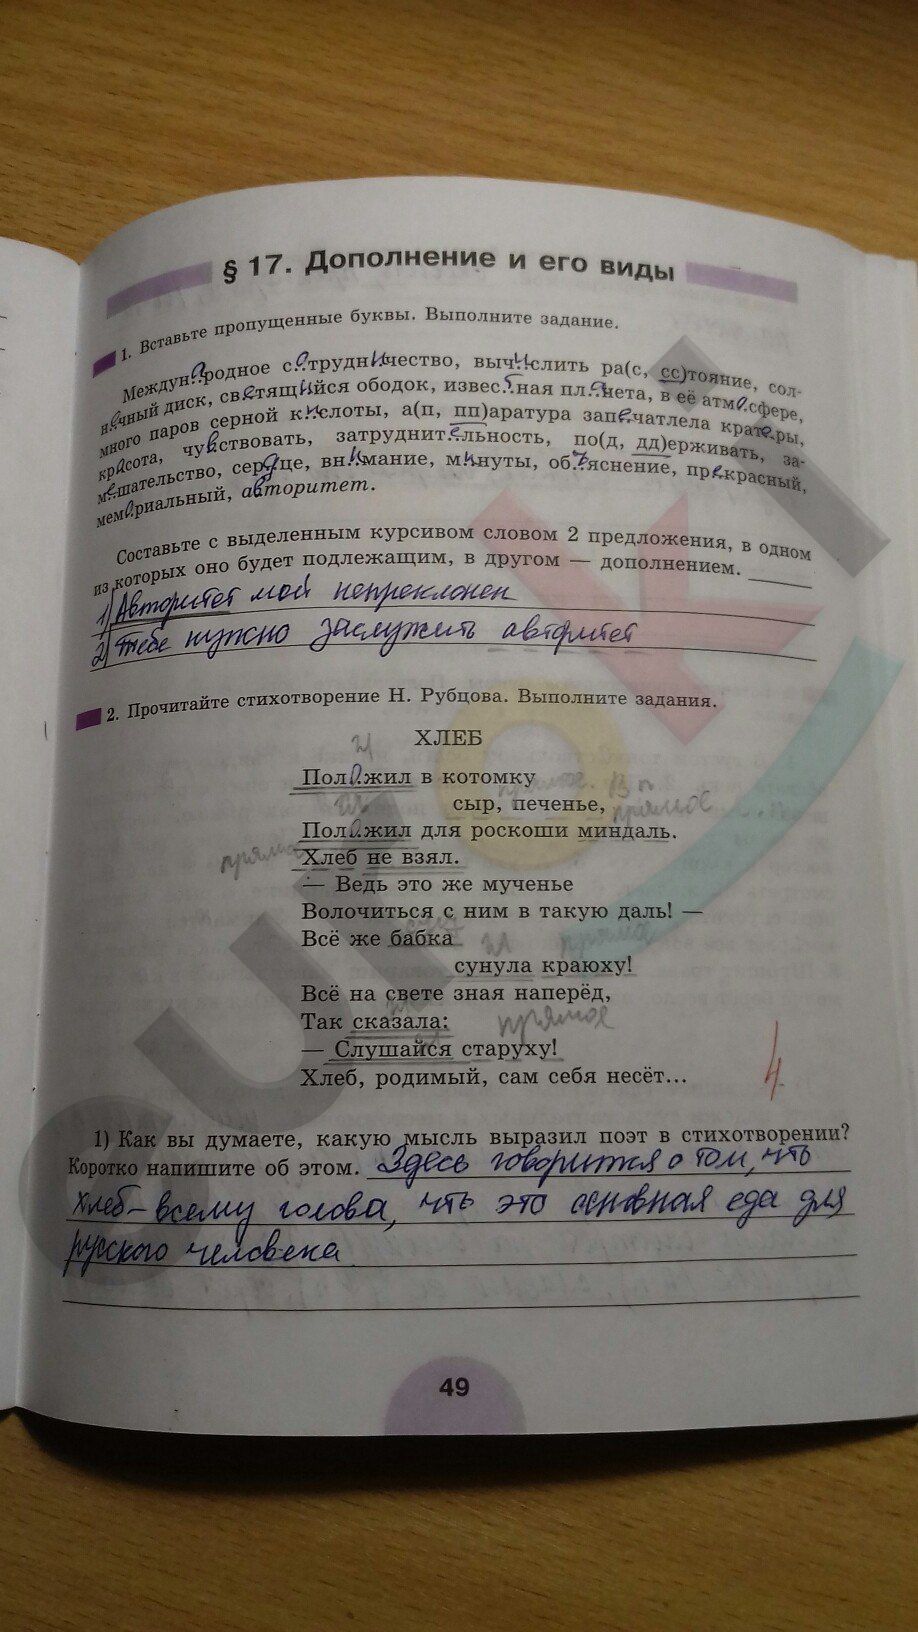 ГДЗ Русский язык 8 класс - стр. 49